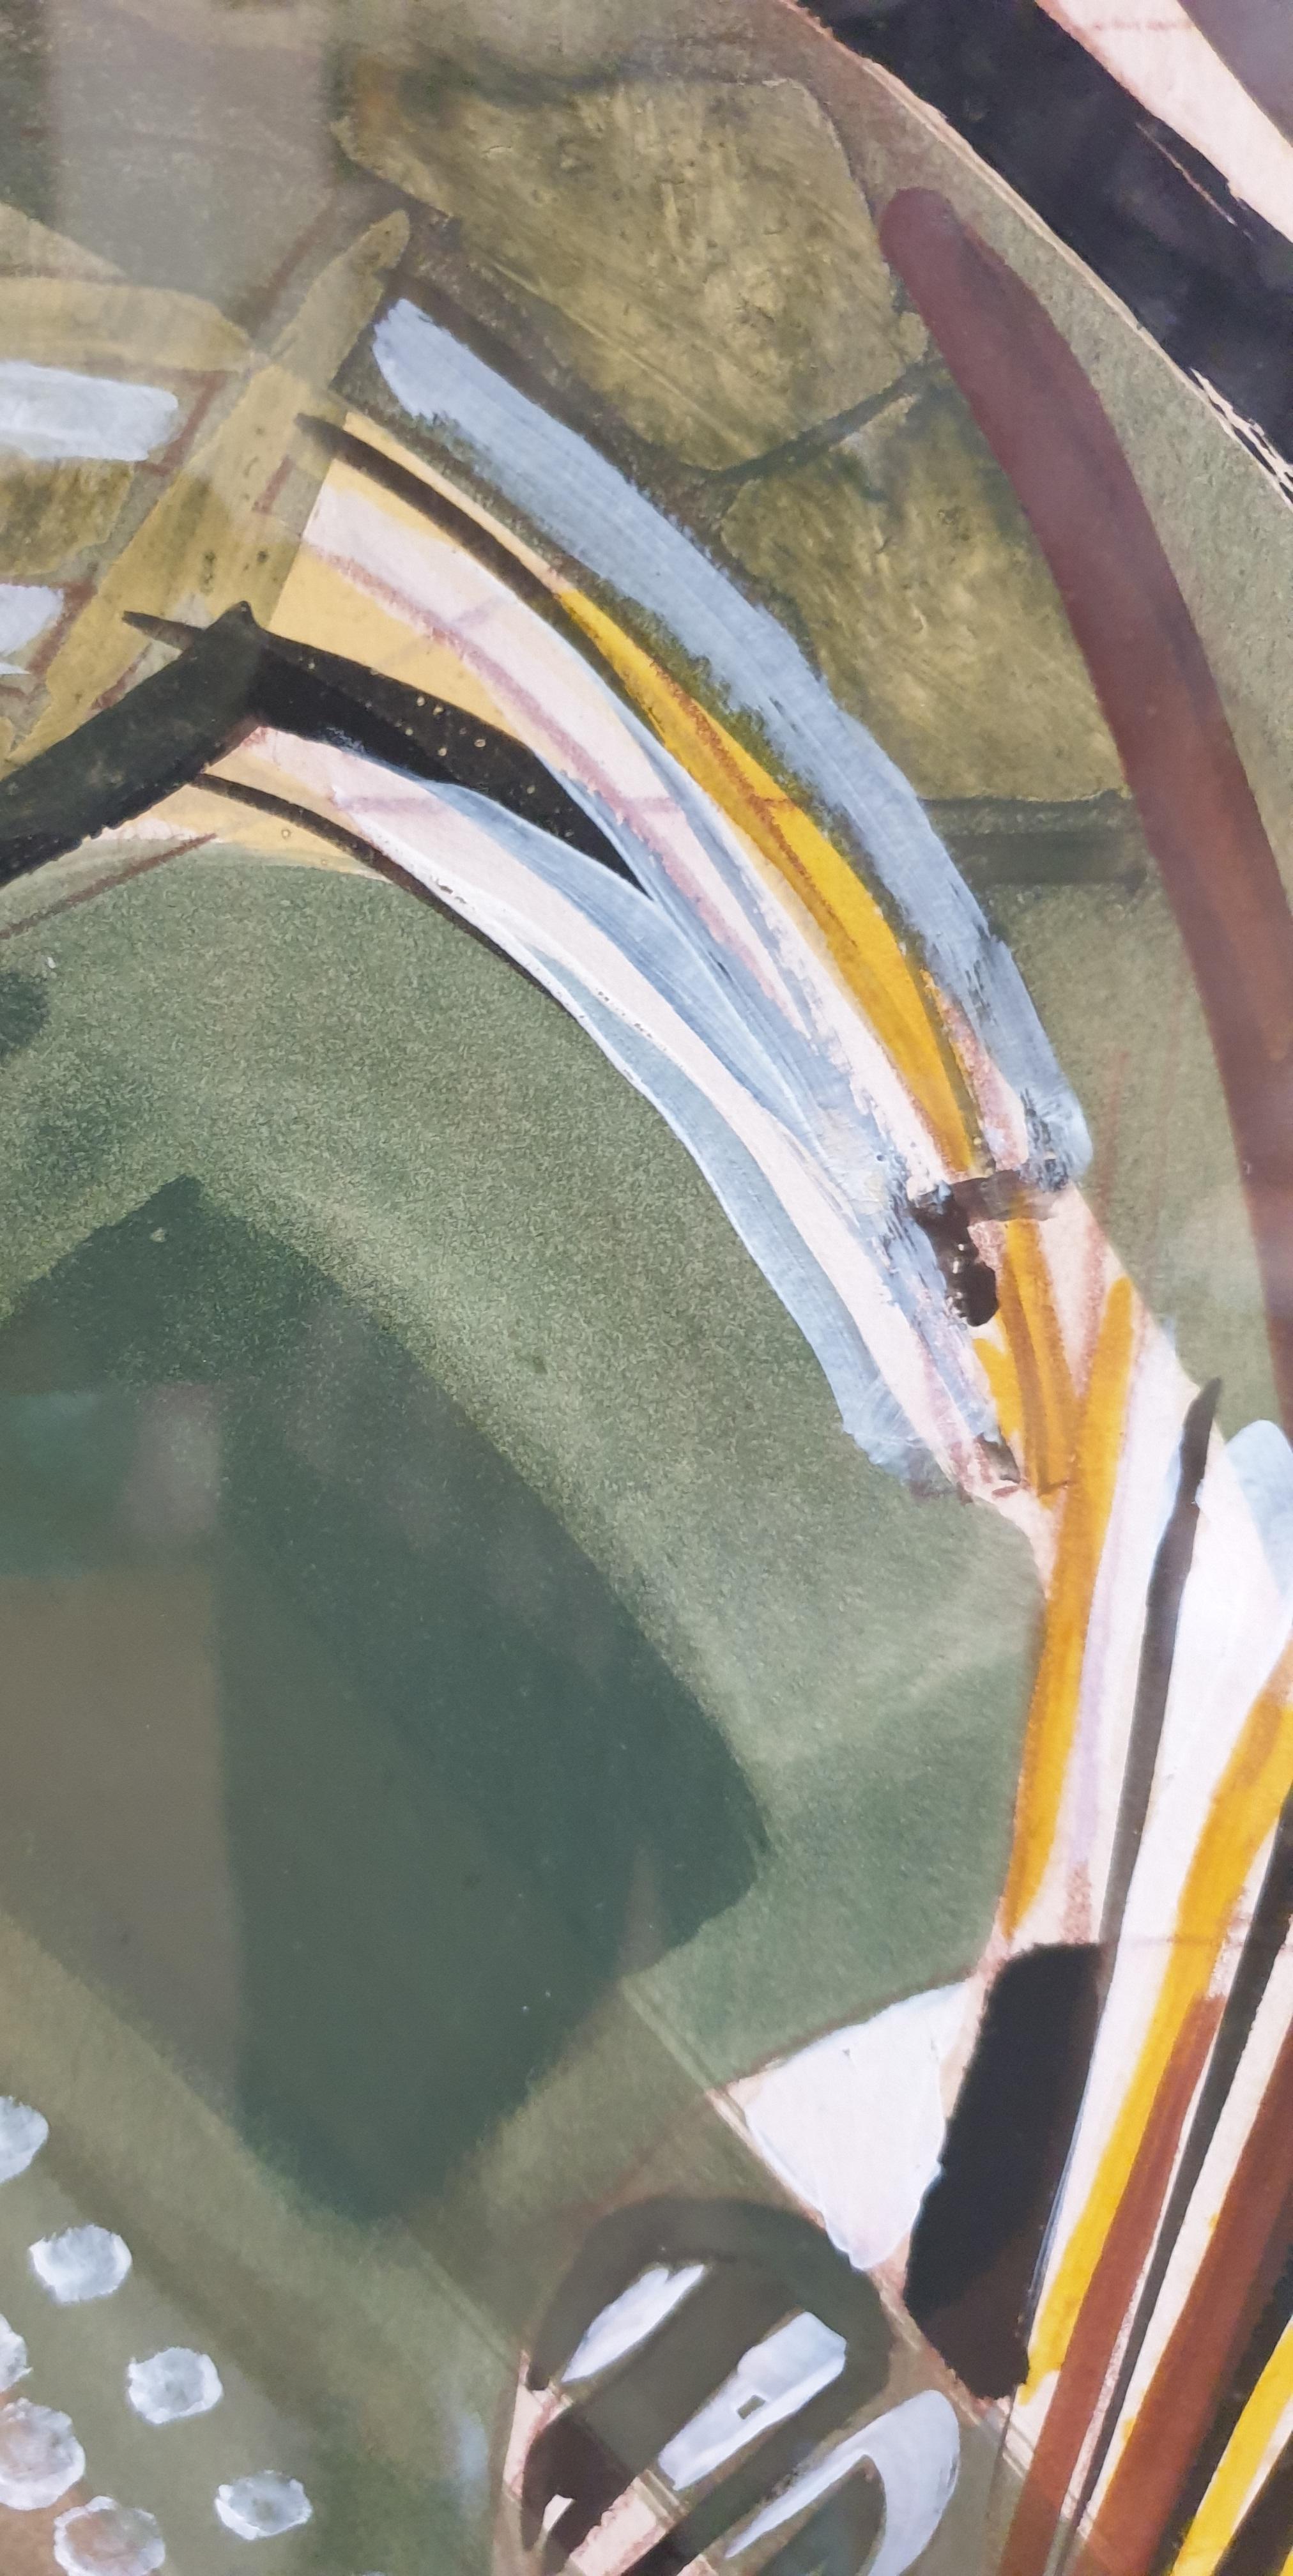 Gouache expressionniste abstraite lyrique sur papier de l'artiste français Michel Loiseau. Signé en bas à droite.

Michel Loiseau-Rizzo, né en 1937 est un illustrateur et artiste vivant et travaillant à Azerat en Dordogne.

Un tourbillon de verts